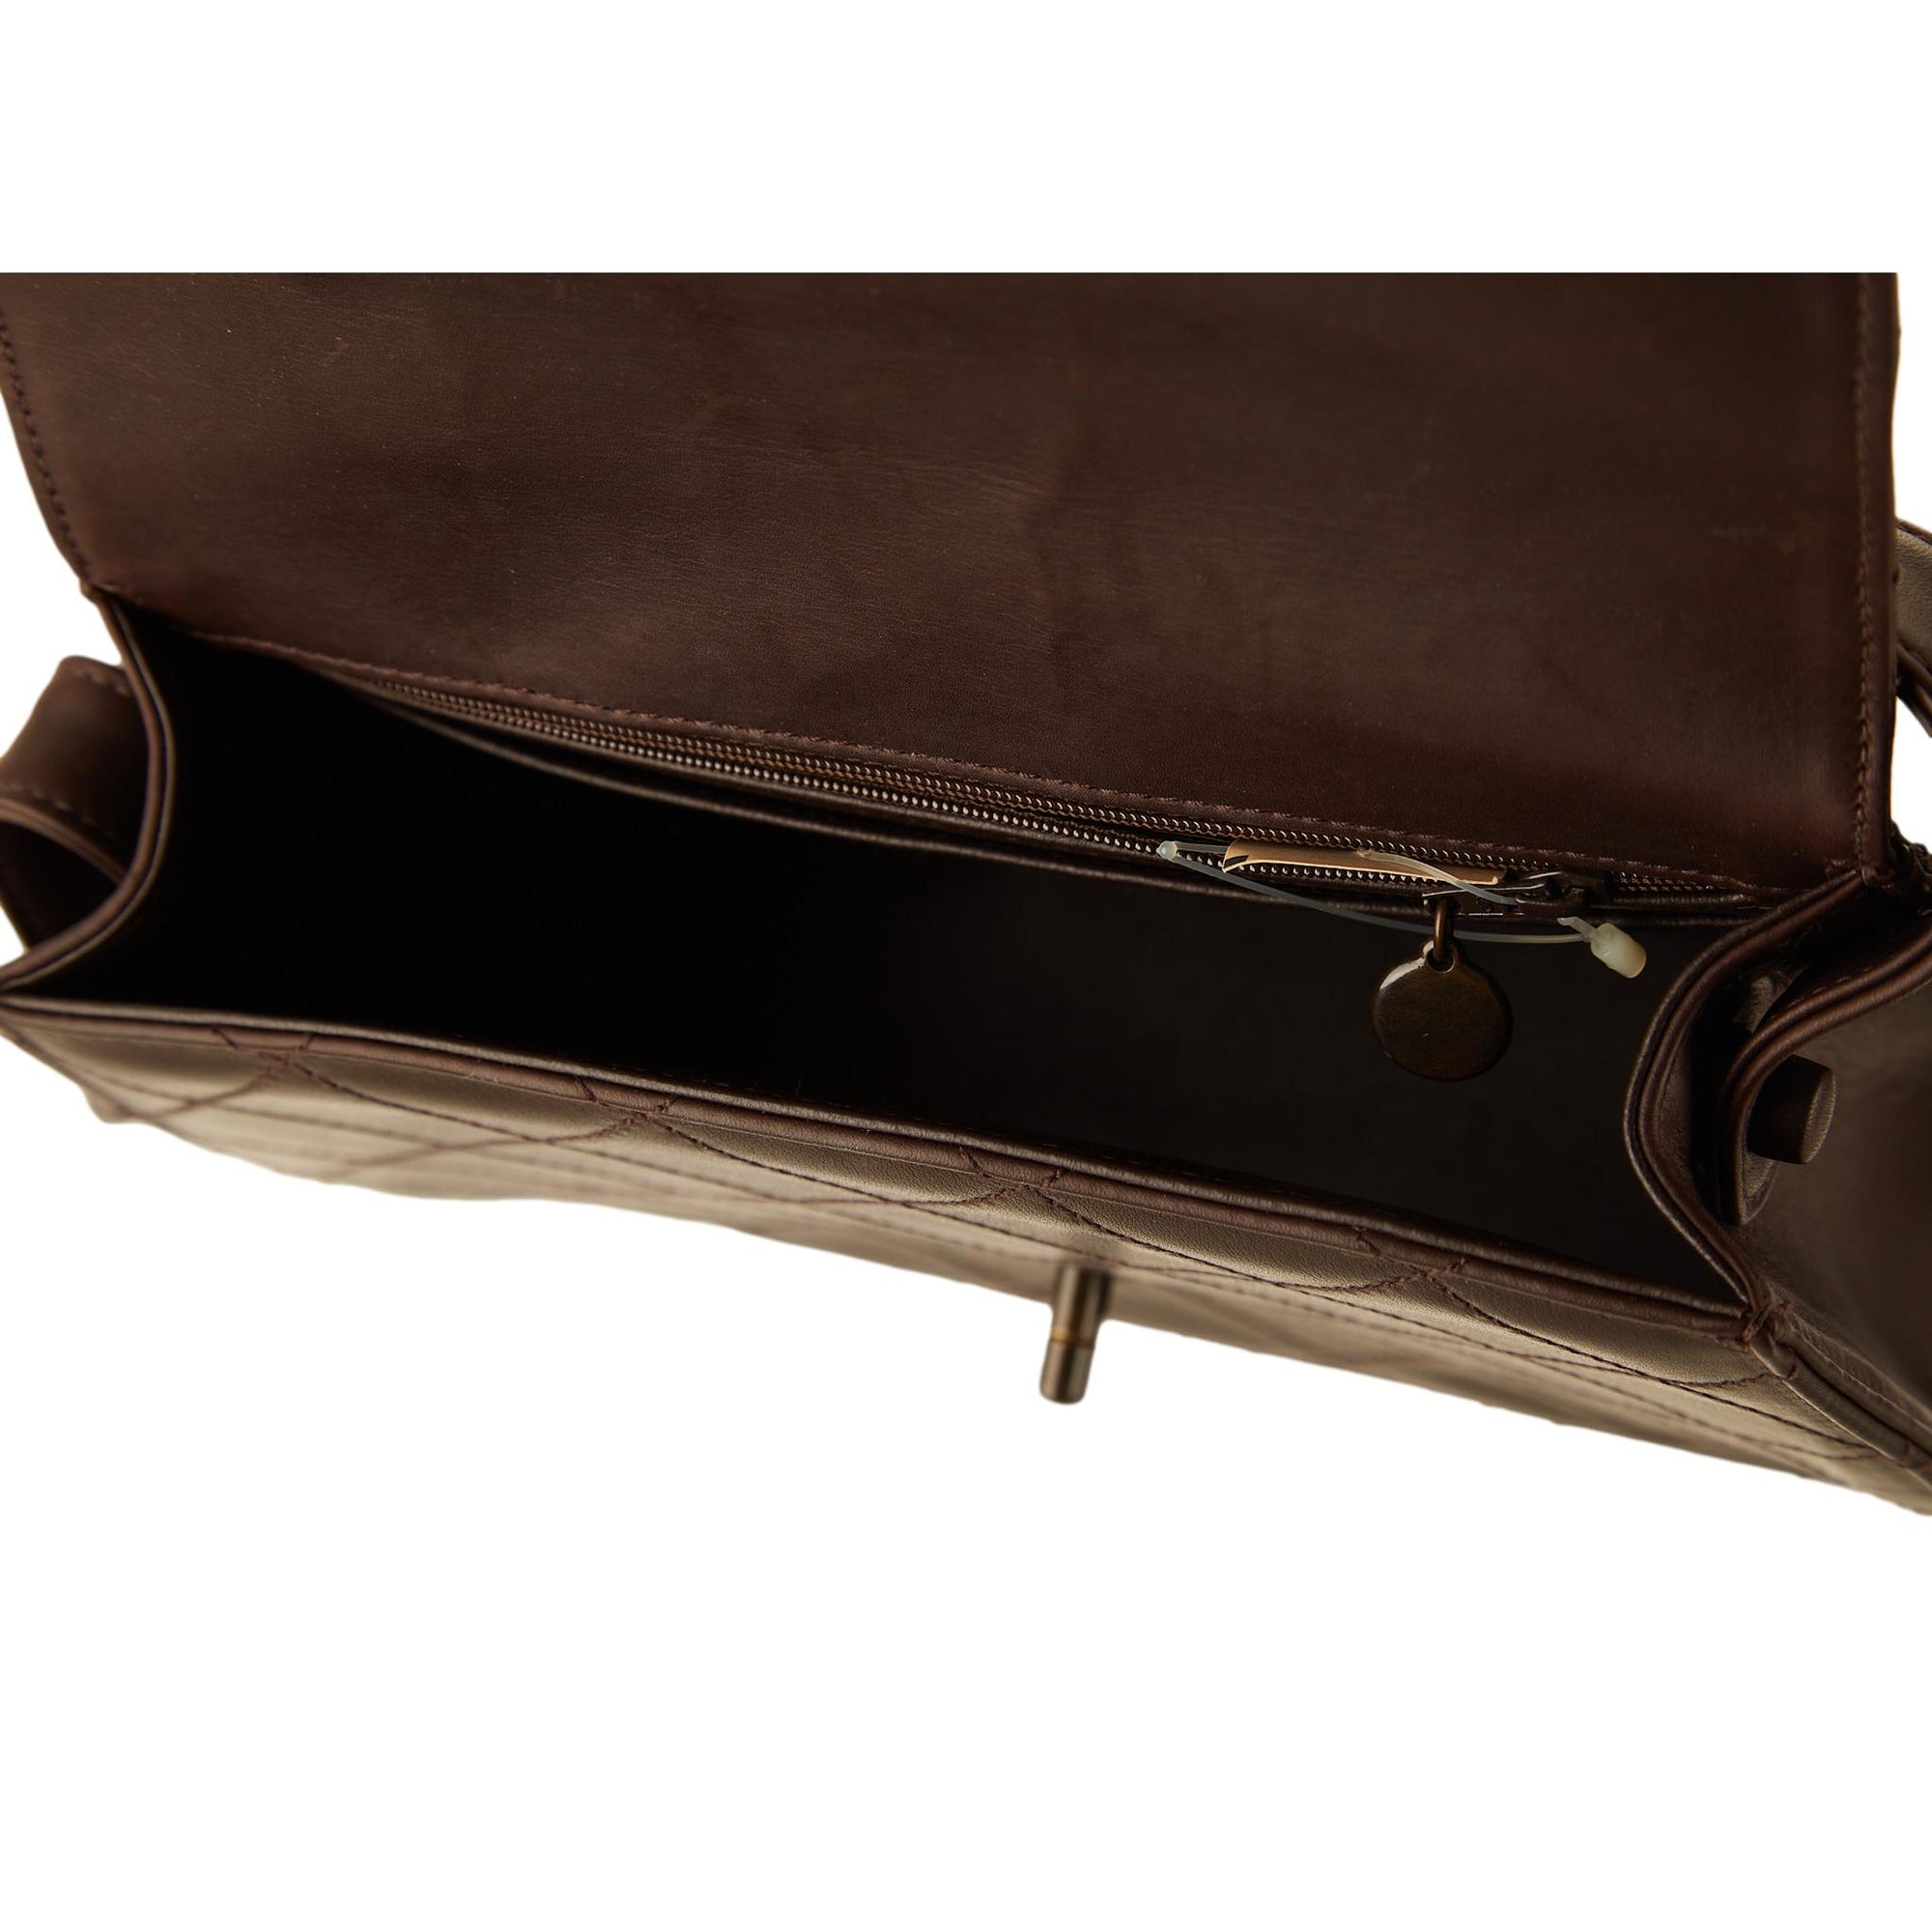 Chanel Brown Quilted Shoulder Bag